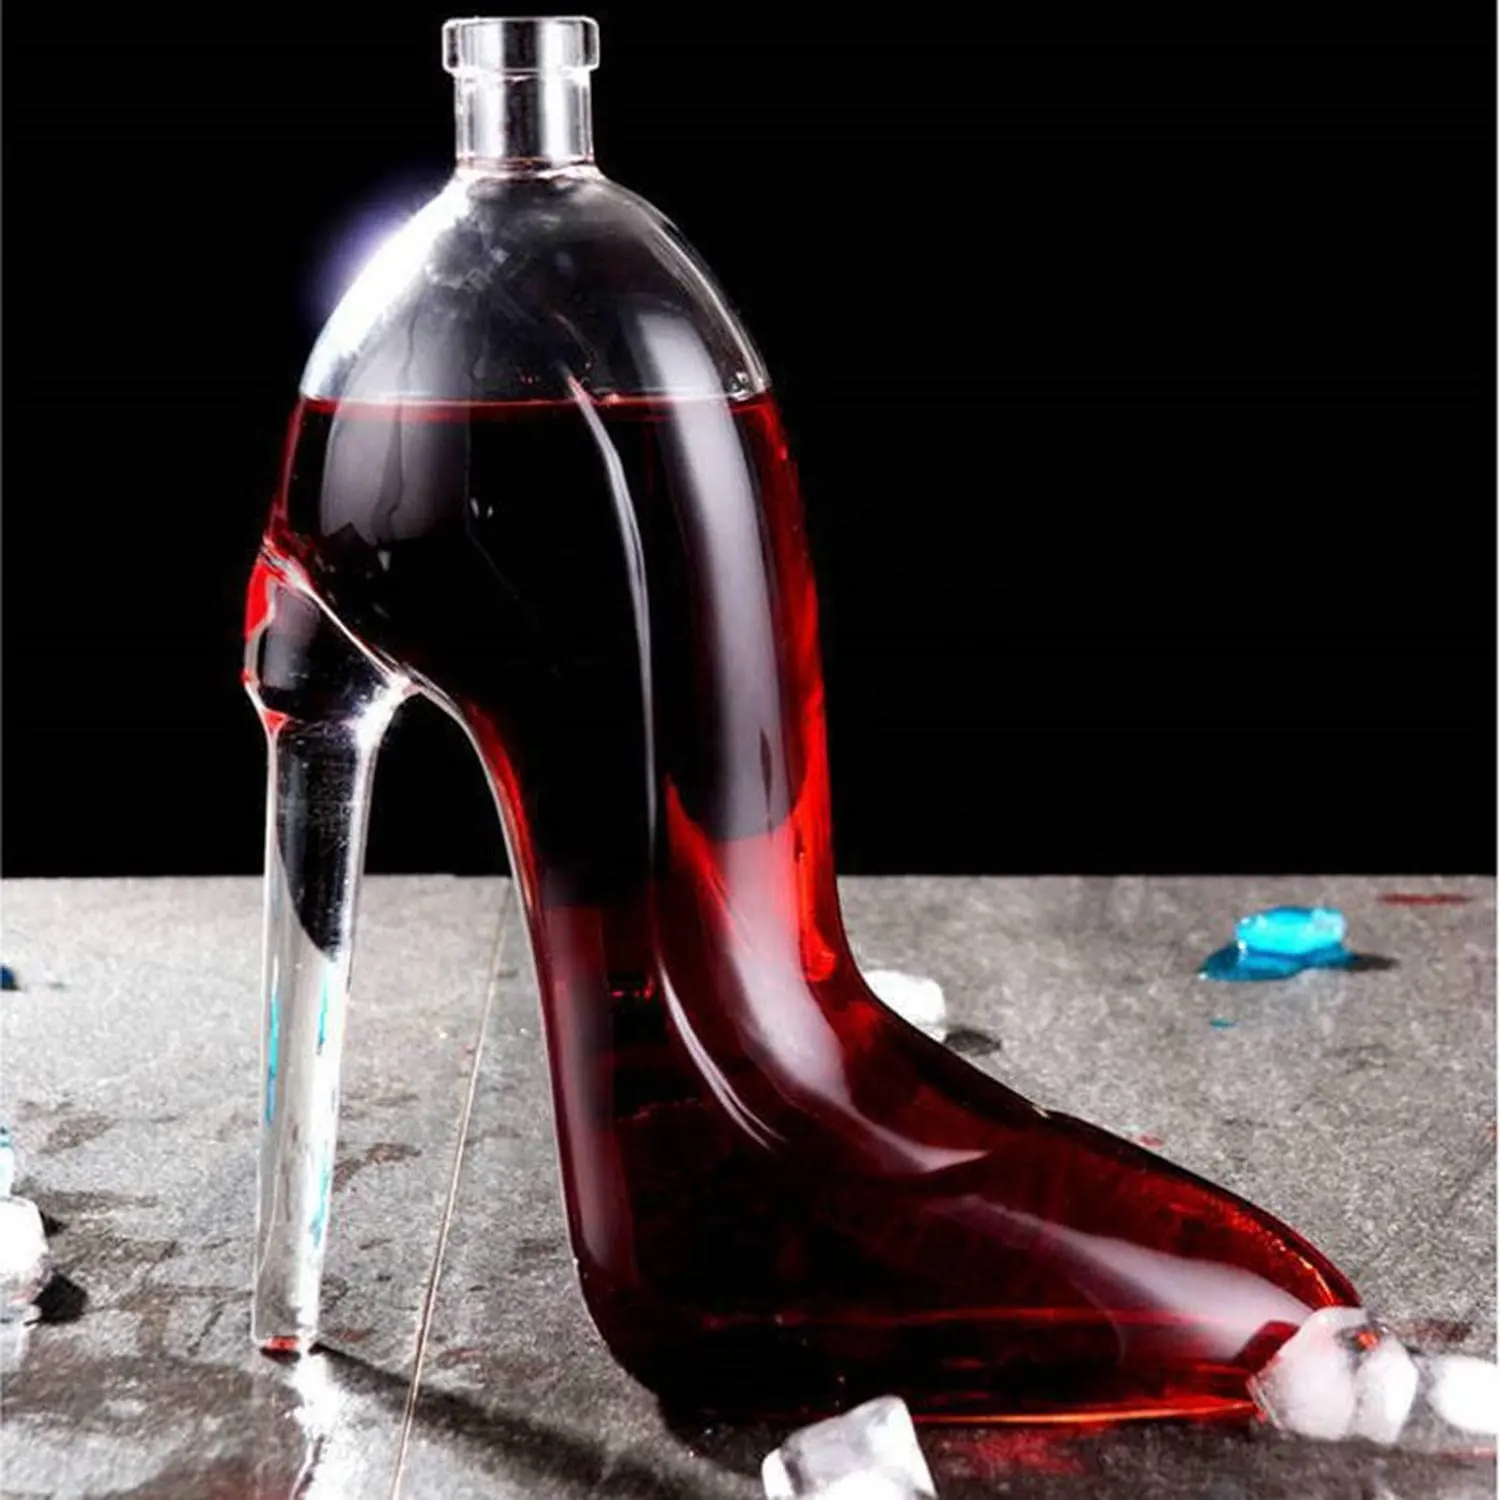 375ml उच्च एड़ी के जूते कंटर शराब गिलास उत्तम शराब शीशे की सुराही घर सजावट रचनात्मक व्हिस्की की बोतल